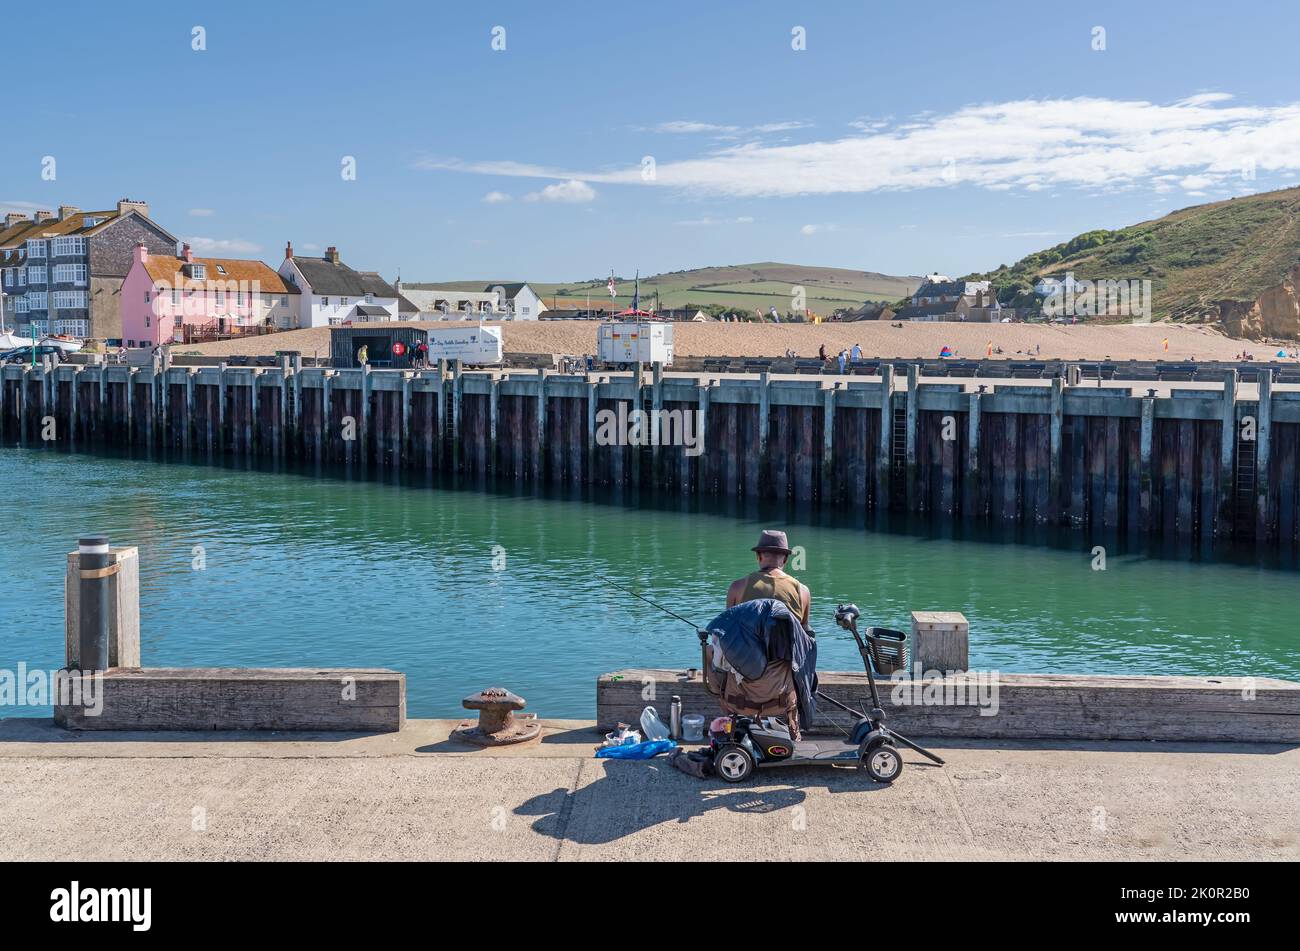 Un homme assis sur un scooter de mobilité tout en pêchant au large du port de West Bay, Dorset. 26th août 2022. Accès aux espaces ouverts et aux loisirs. Banque D'Images